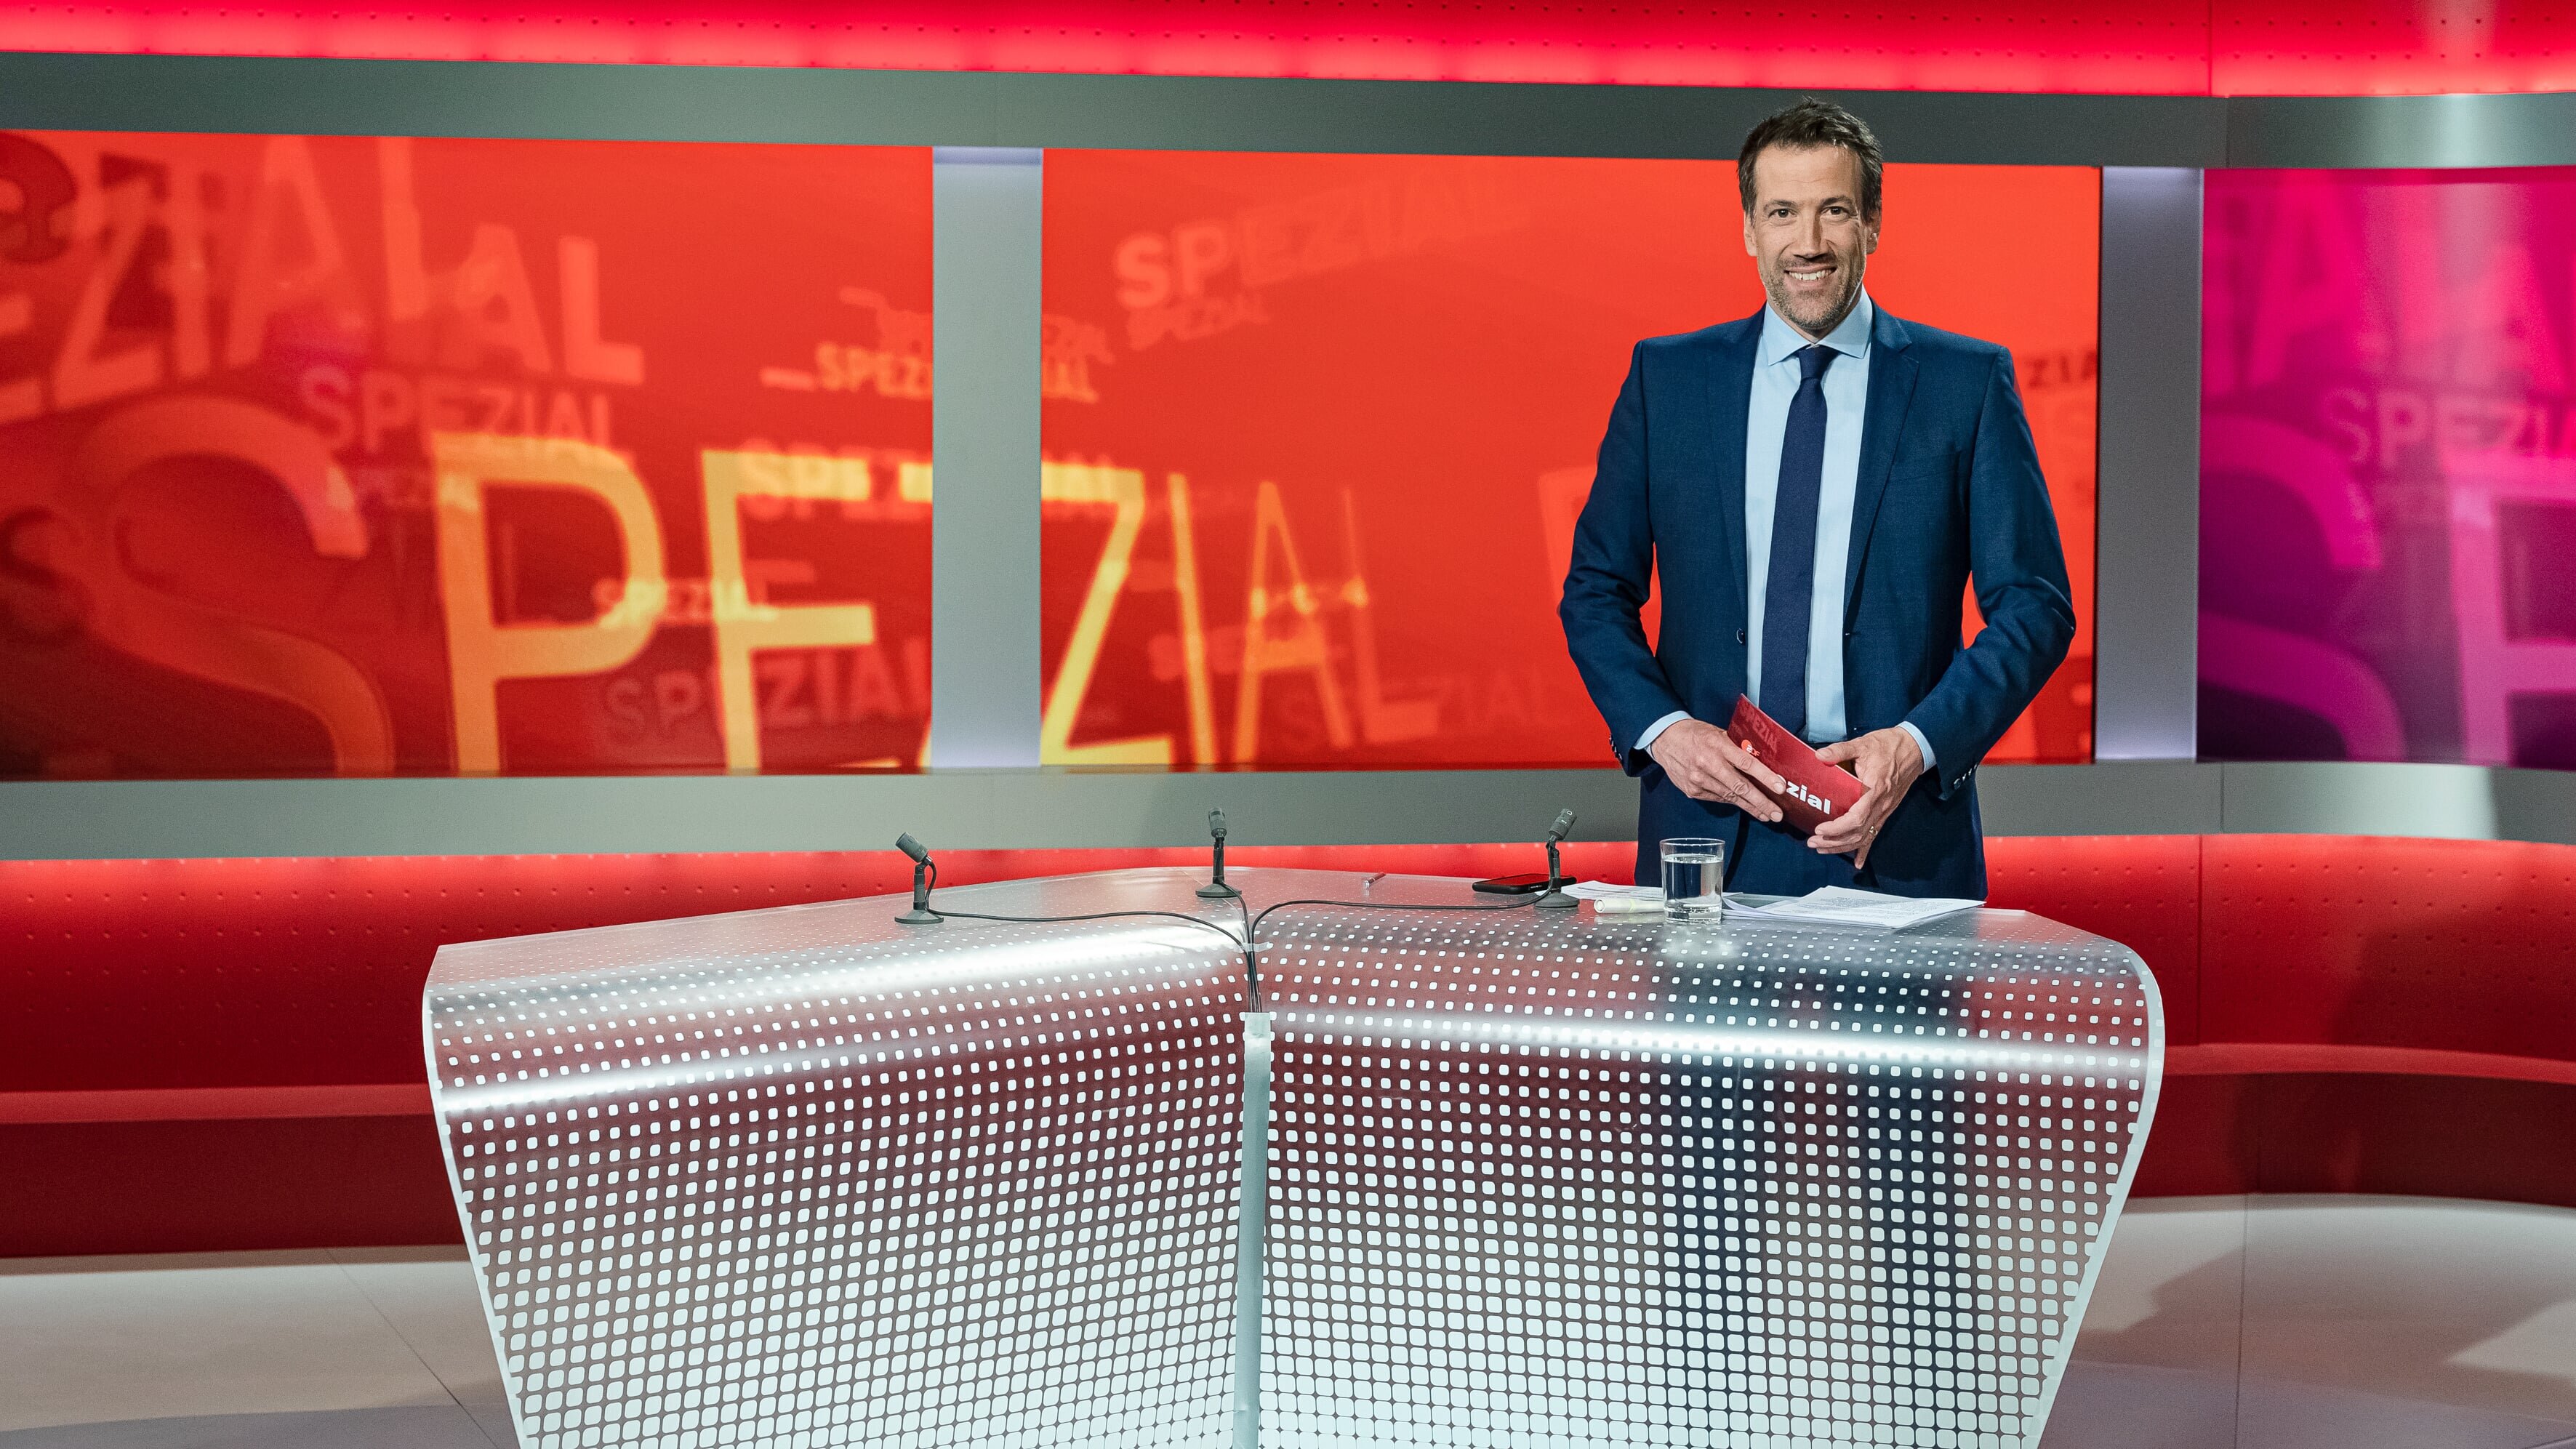 ZDF spezial